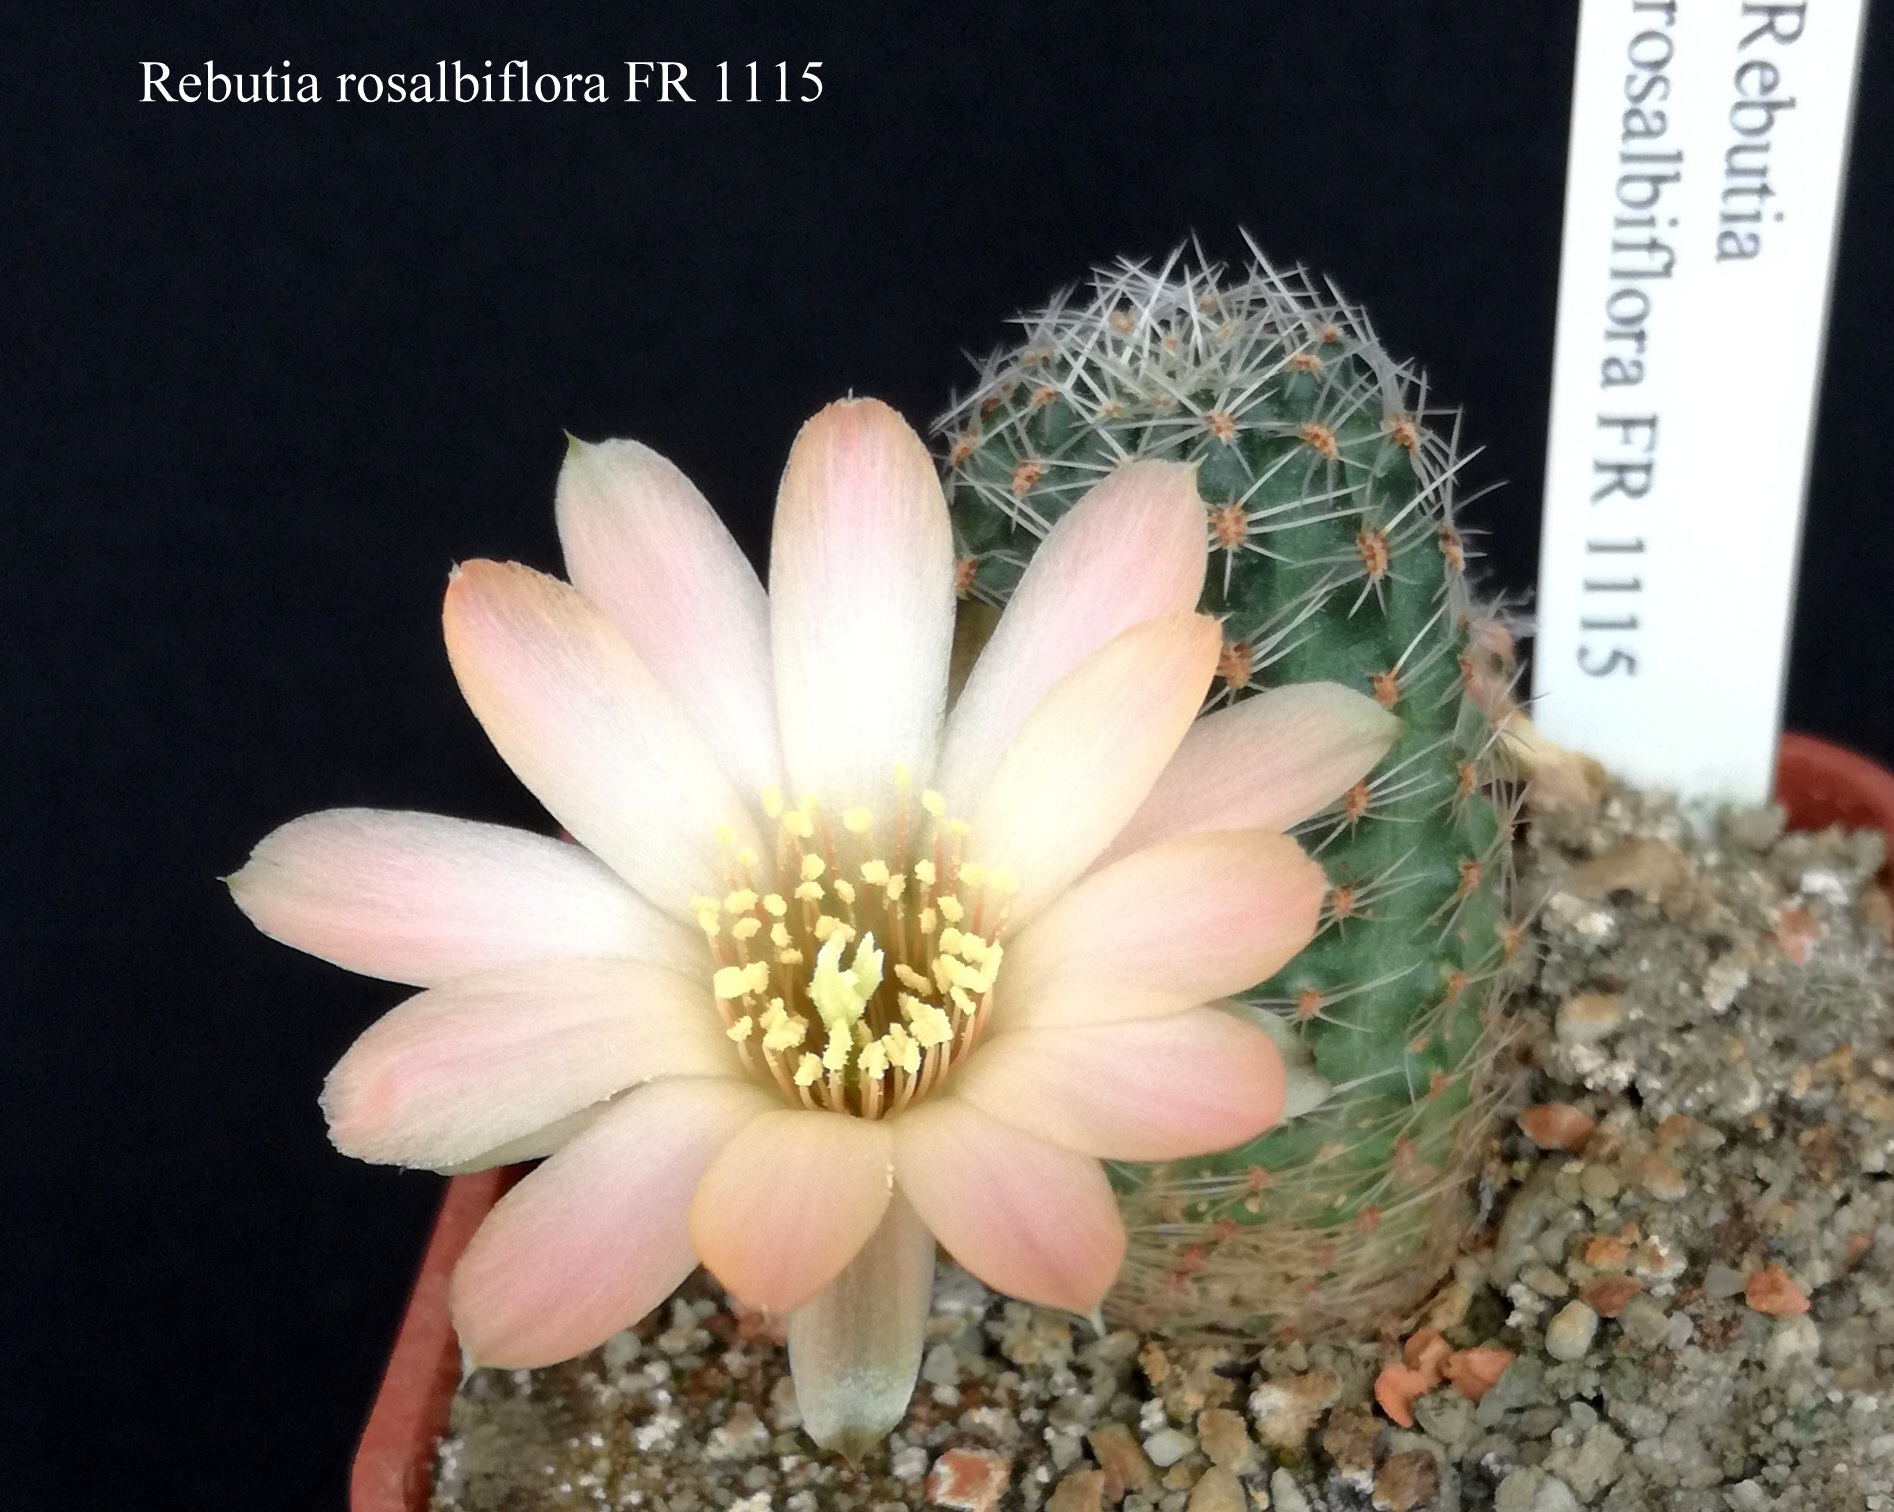 285 Rebutia rosalbiflora FR 1115 20190506 - kopie